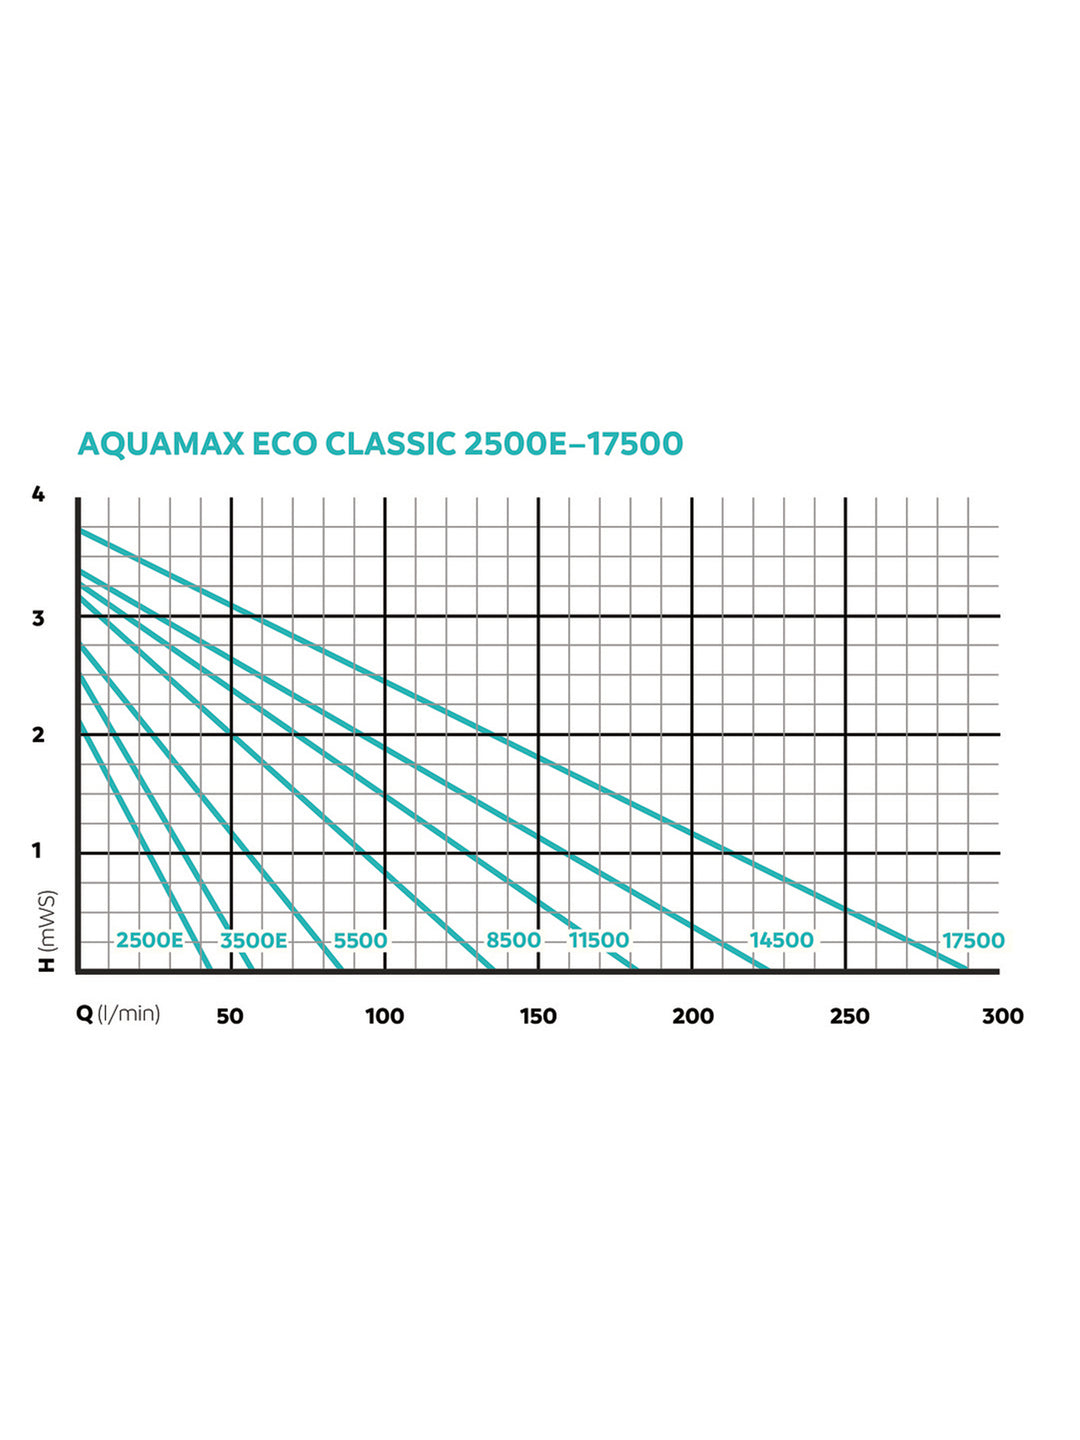 AquaMax Eco Classic 8500 - nepalaquastudio